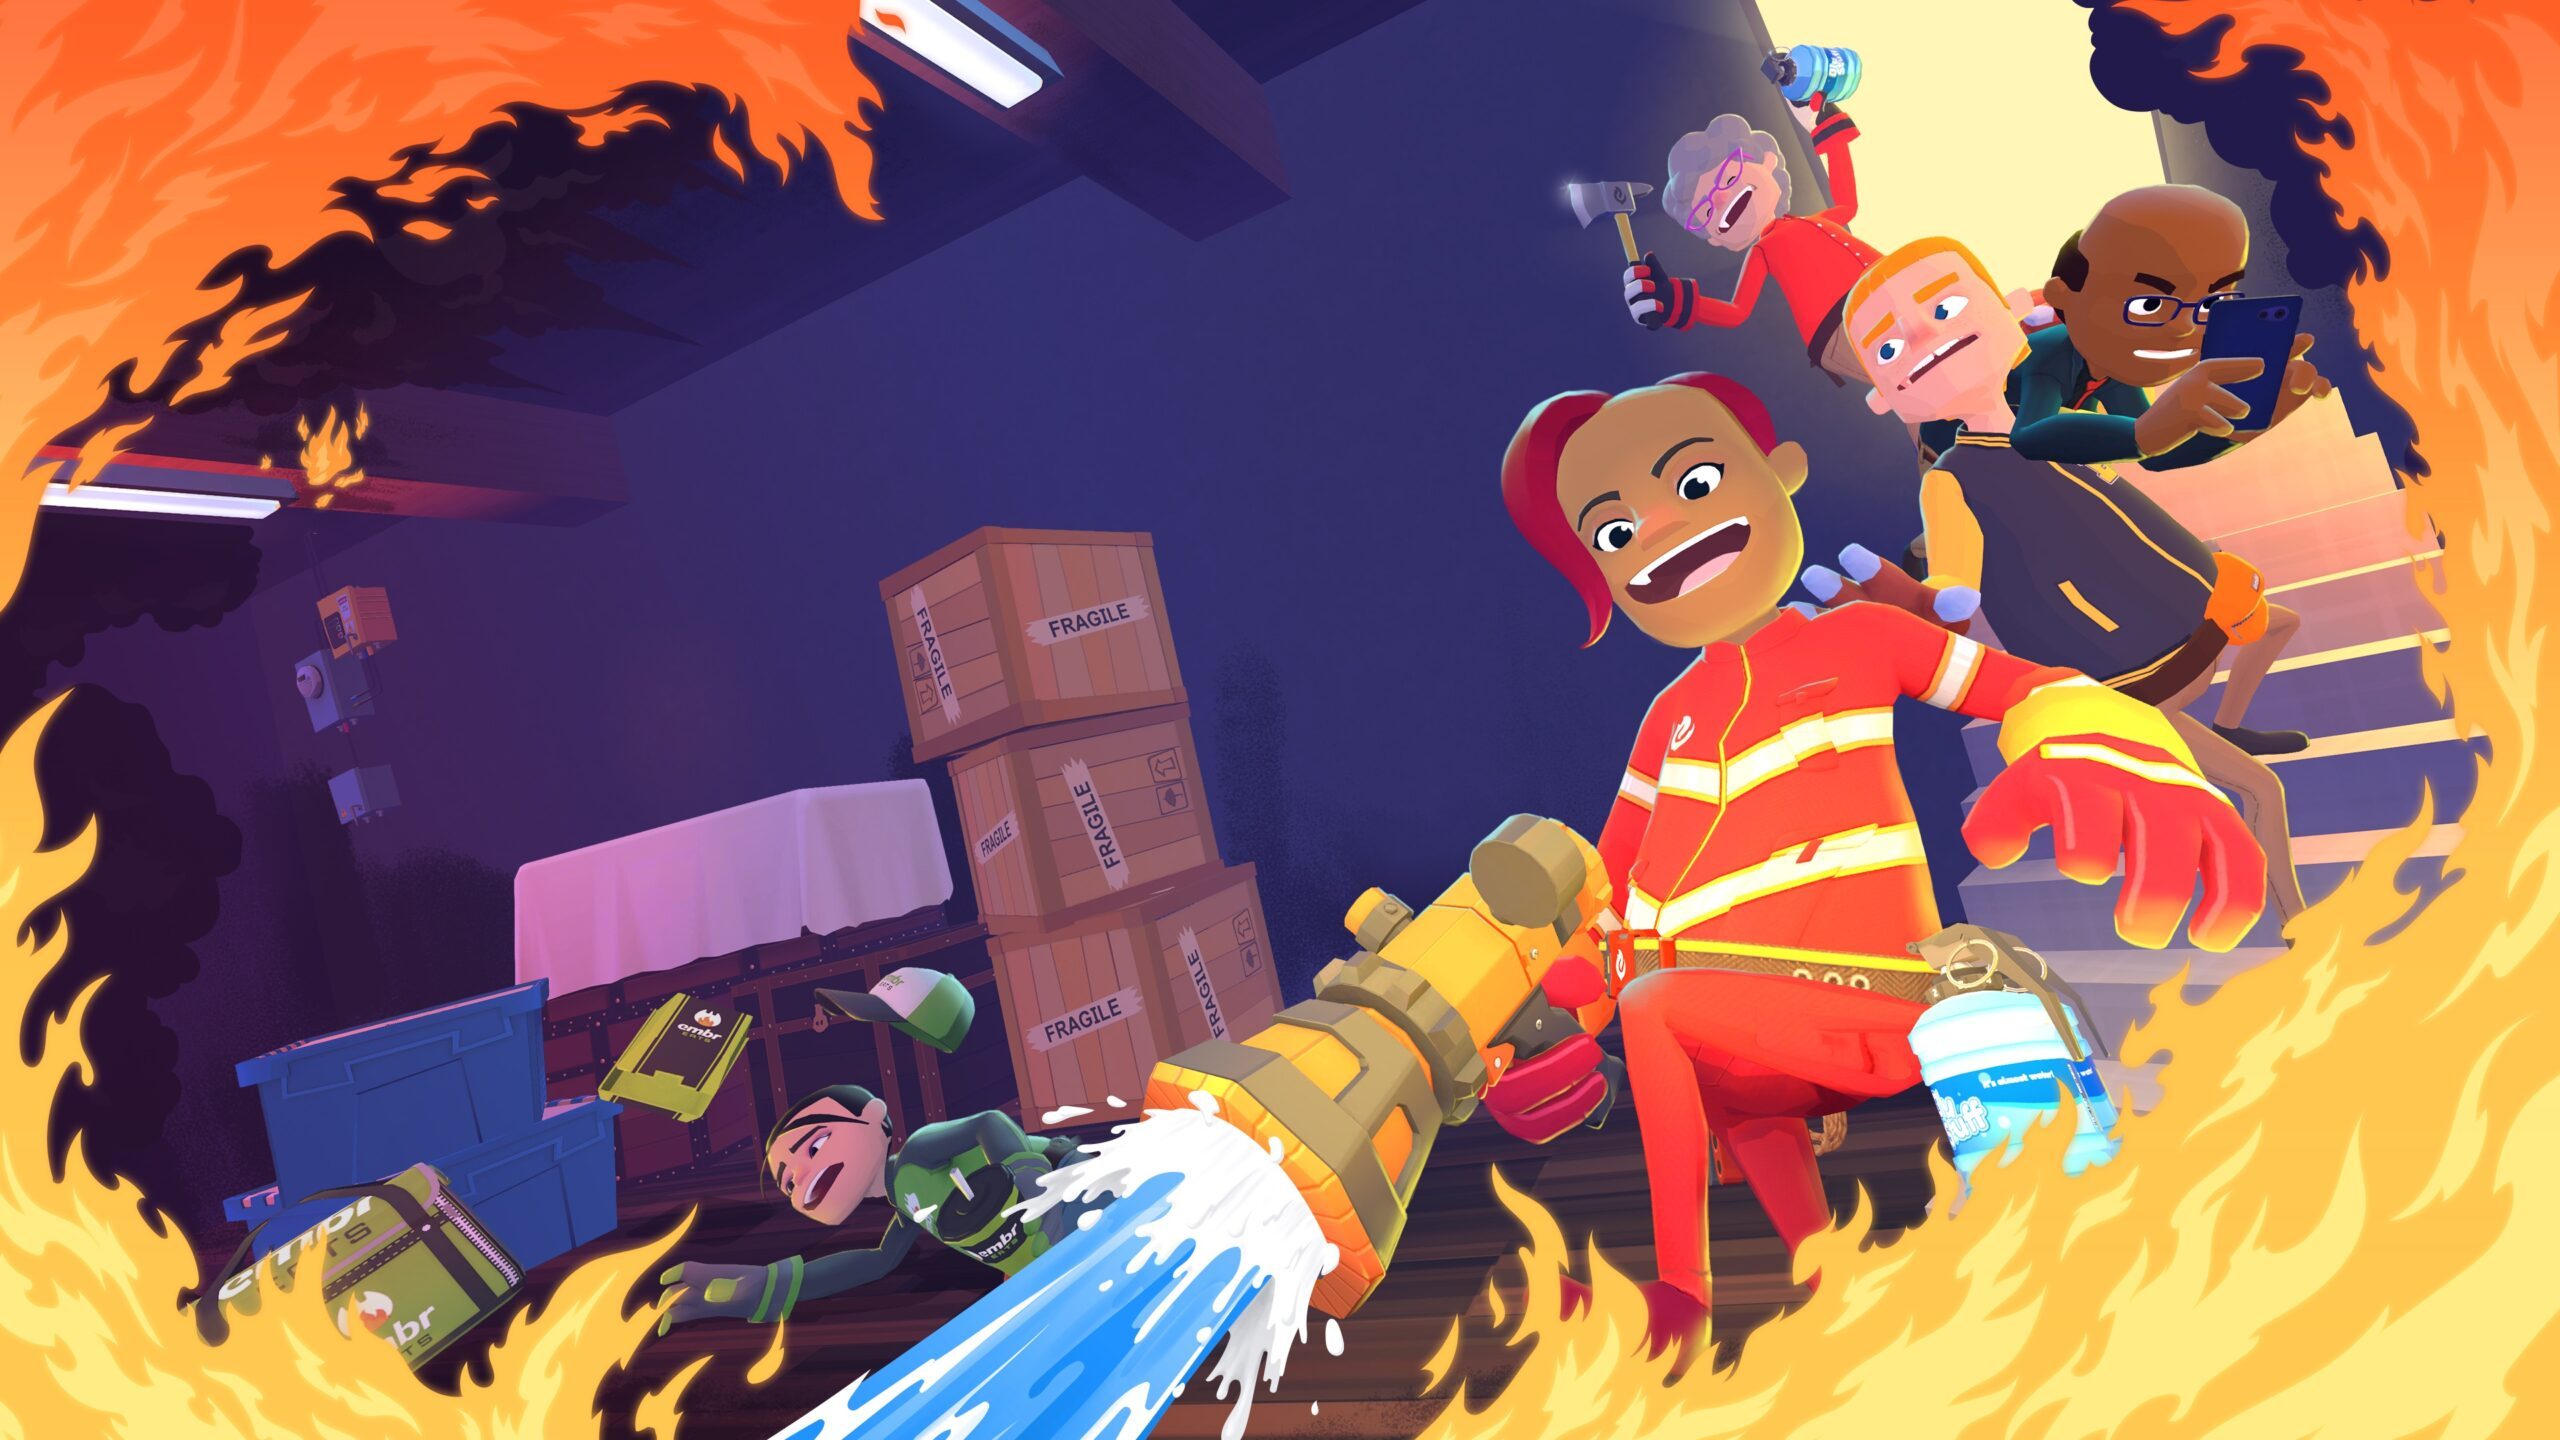 Jouez aux apprentis pompiers dans Embr, un jeu multijoueur effréné disponible dès demain